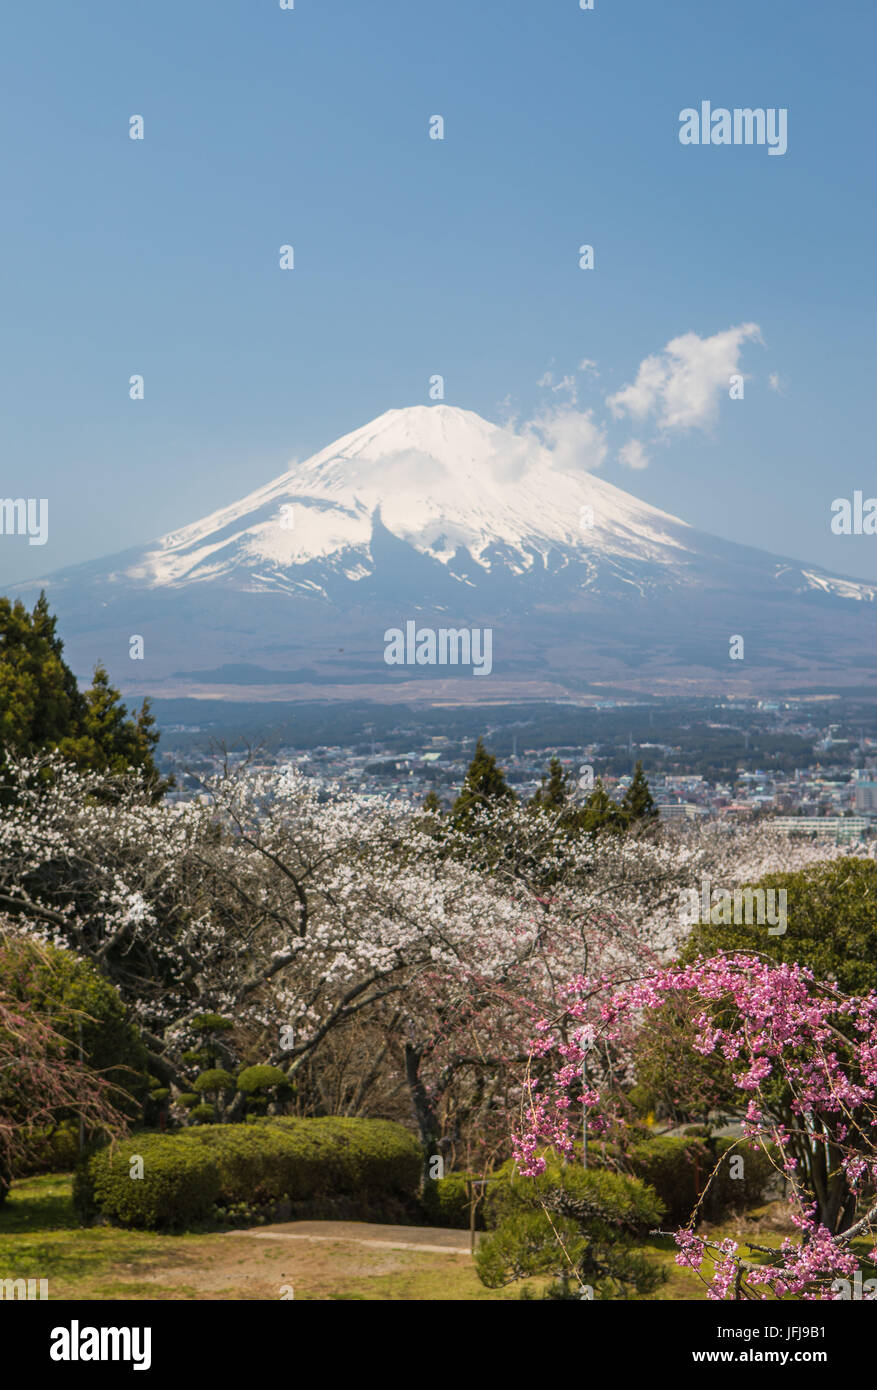 Les fleurs de cerisier, colorées, couleurs, fleurs, Fuji Gotemba City, Japon, du paysage, le Mont Fuji, aucun peuple, printemps, tourisme, voyages Banque D'Images